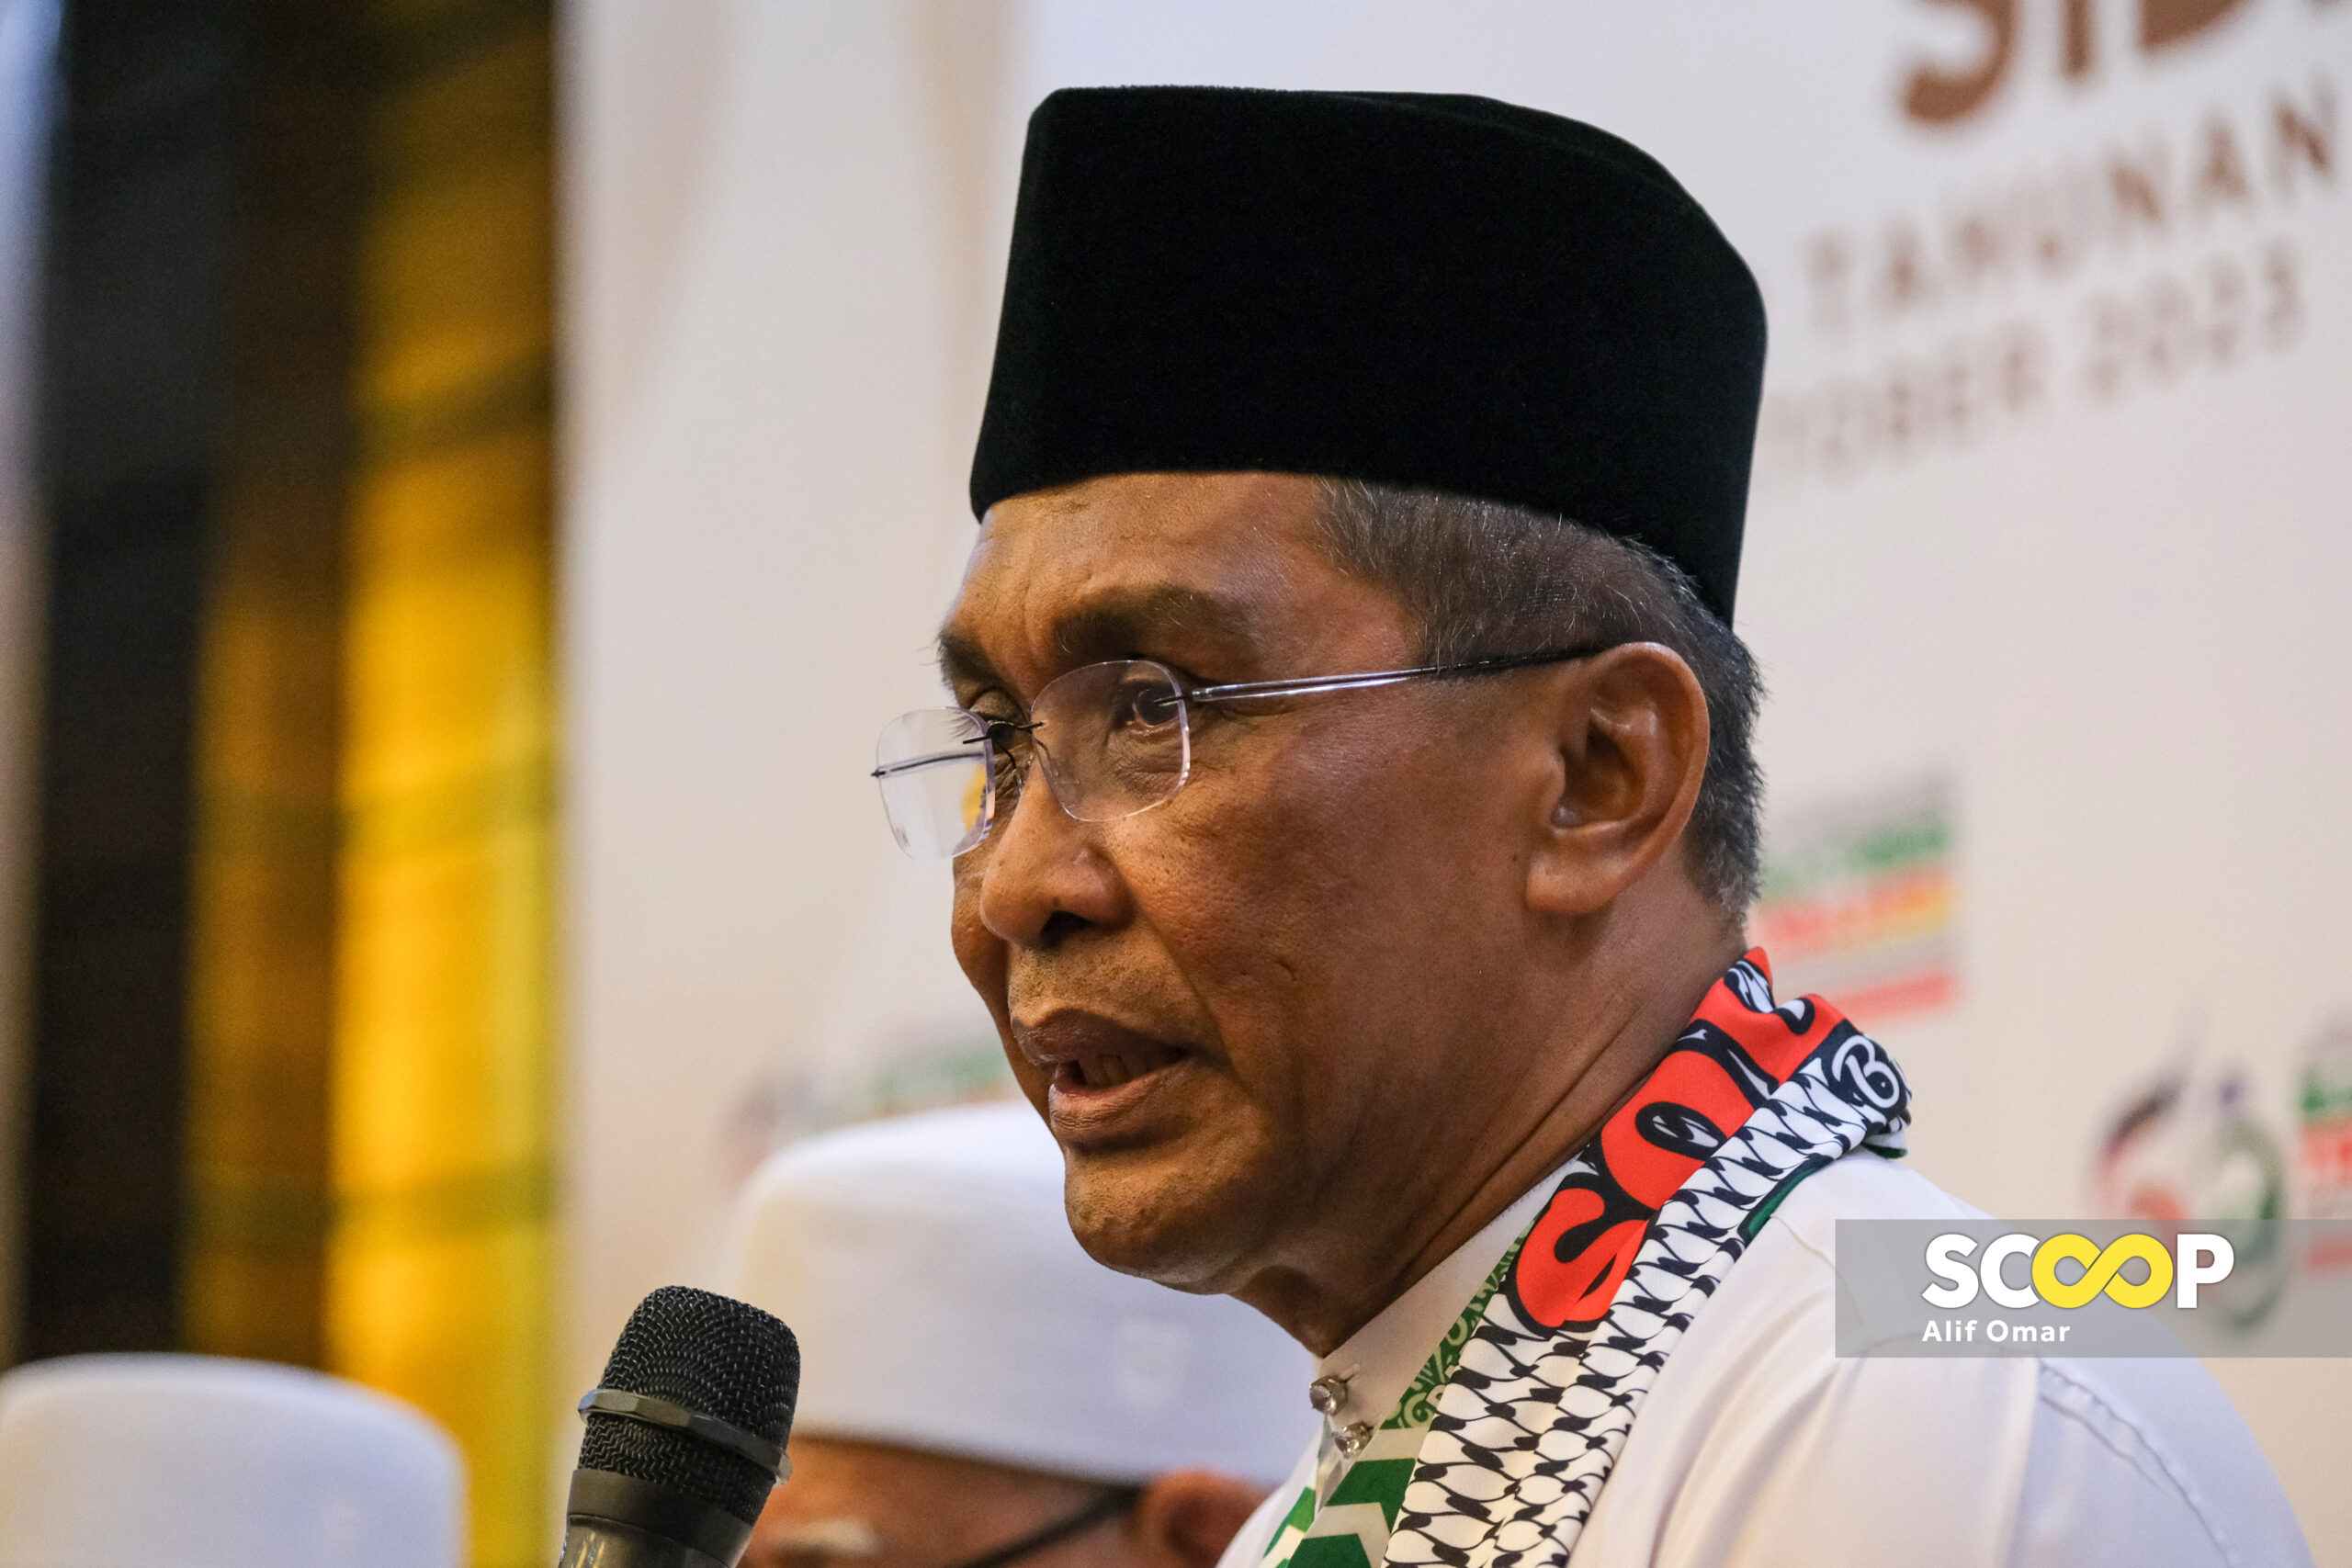 Control DAP’s ‘toxic narratives’, PAS tells Anwar over local council poll concerns